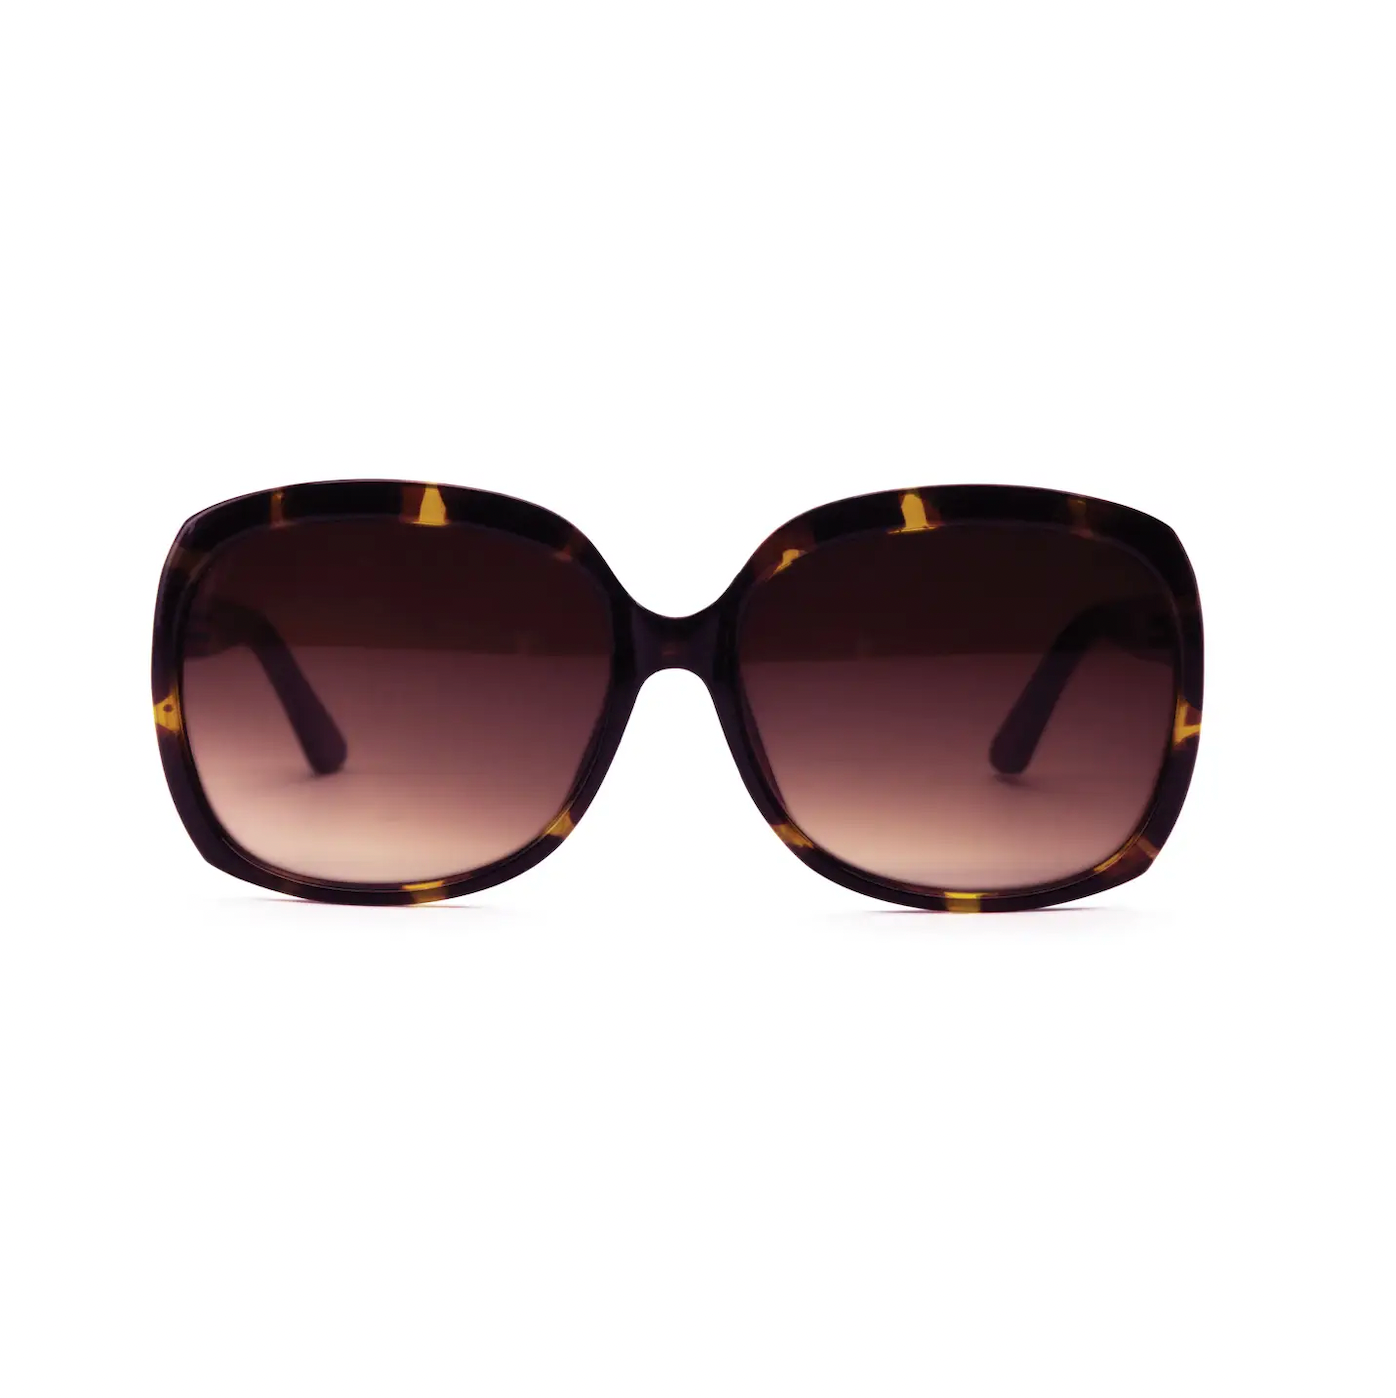 Optimum Optical Sunglasses- Magnolia